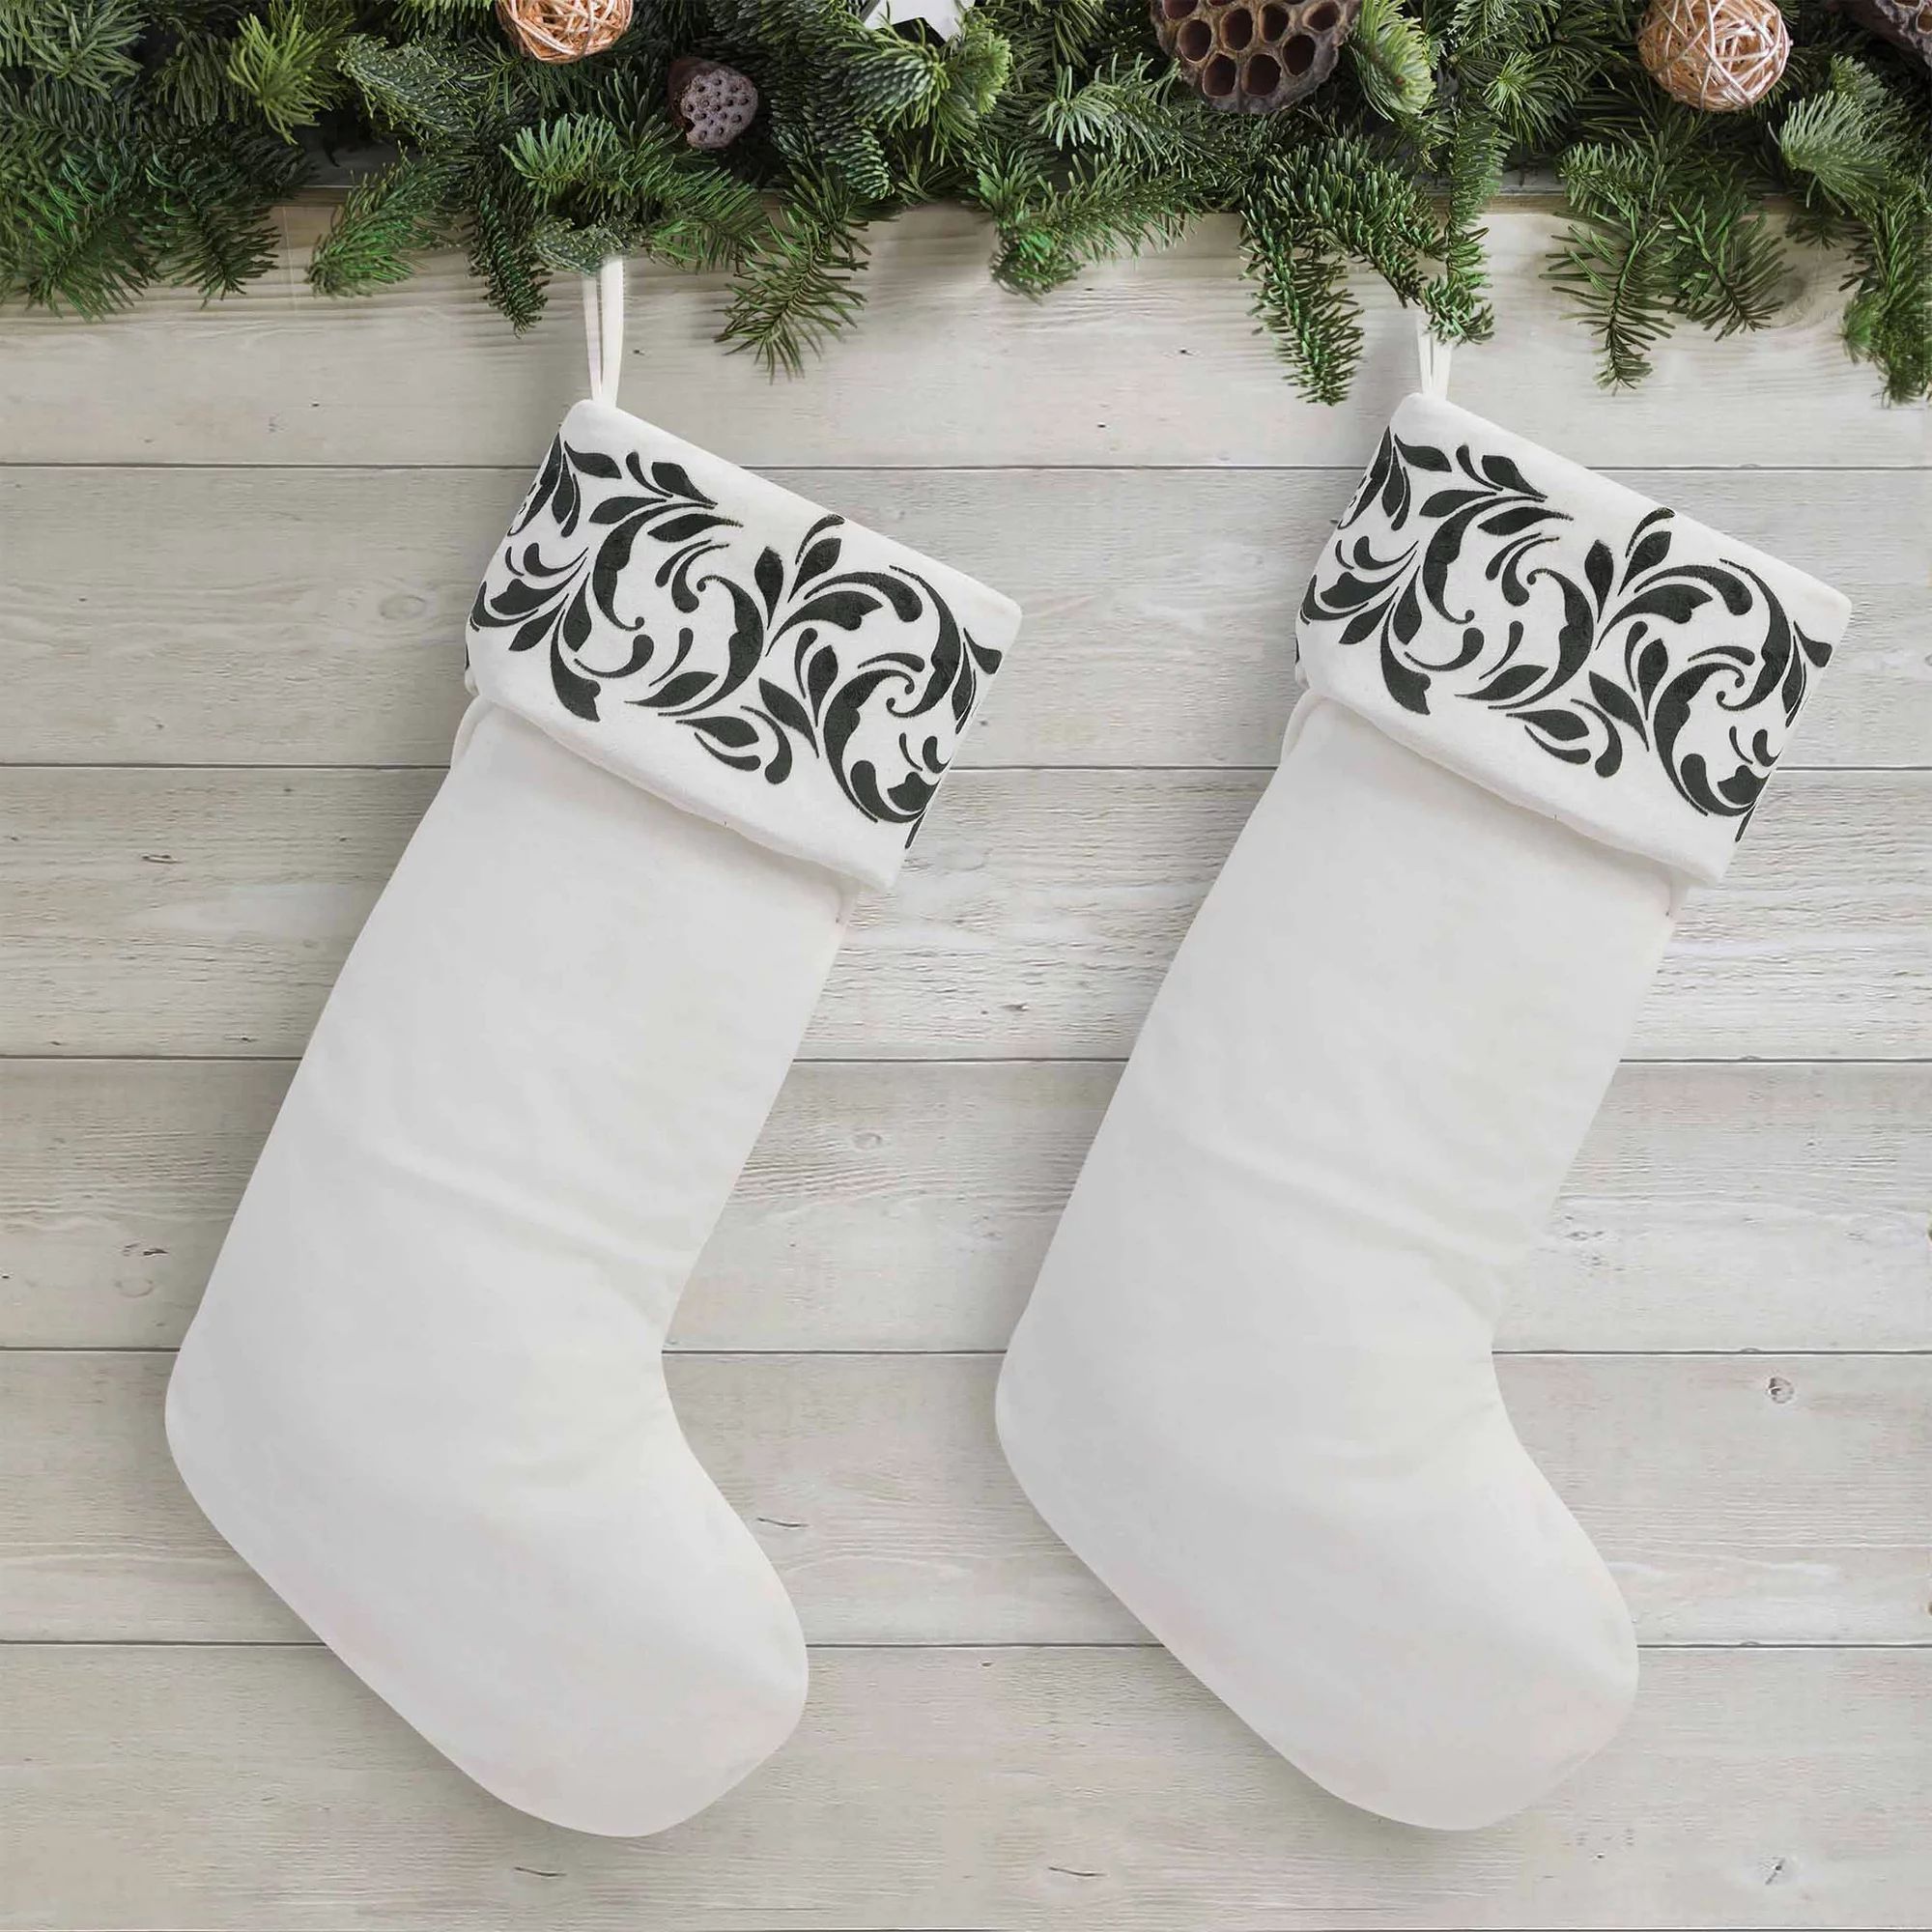 My Texas House Natalie Green Flocked Velvet Christmas Stockings, 20" x 10" (2 Count) | Walmart (US)